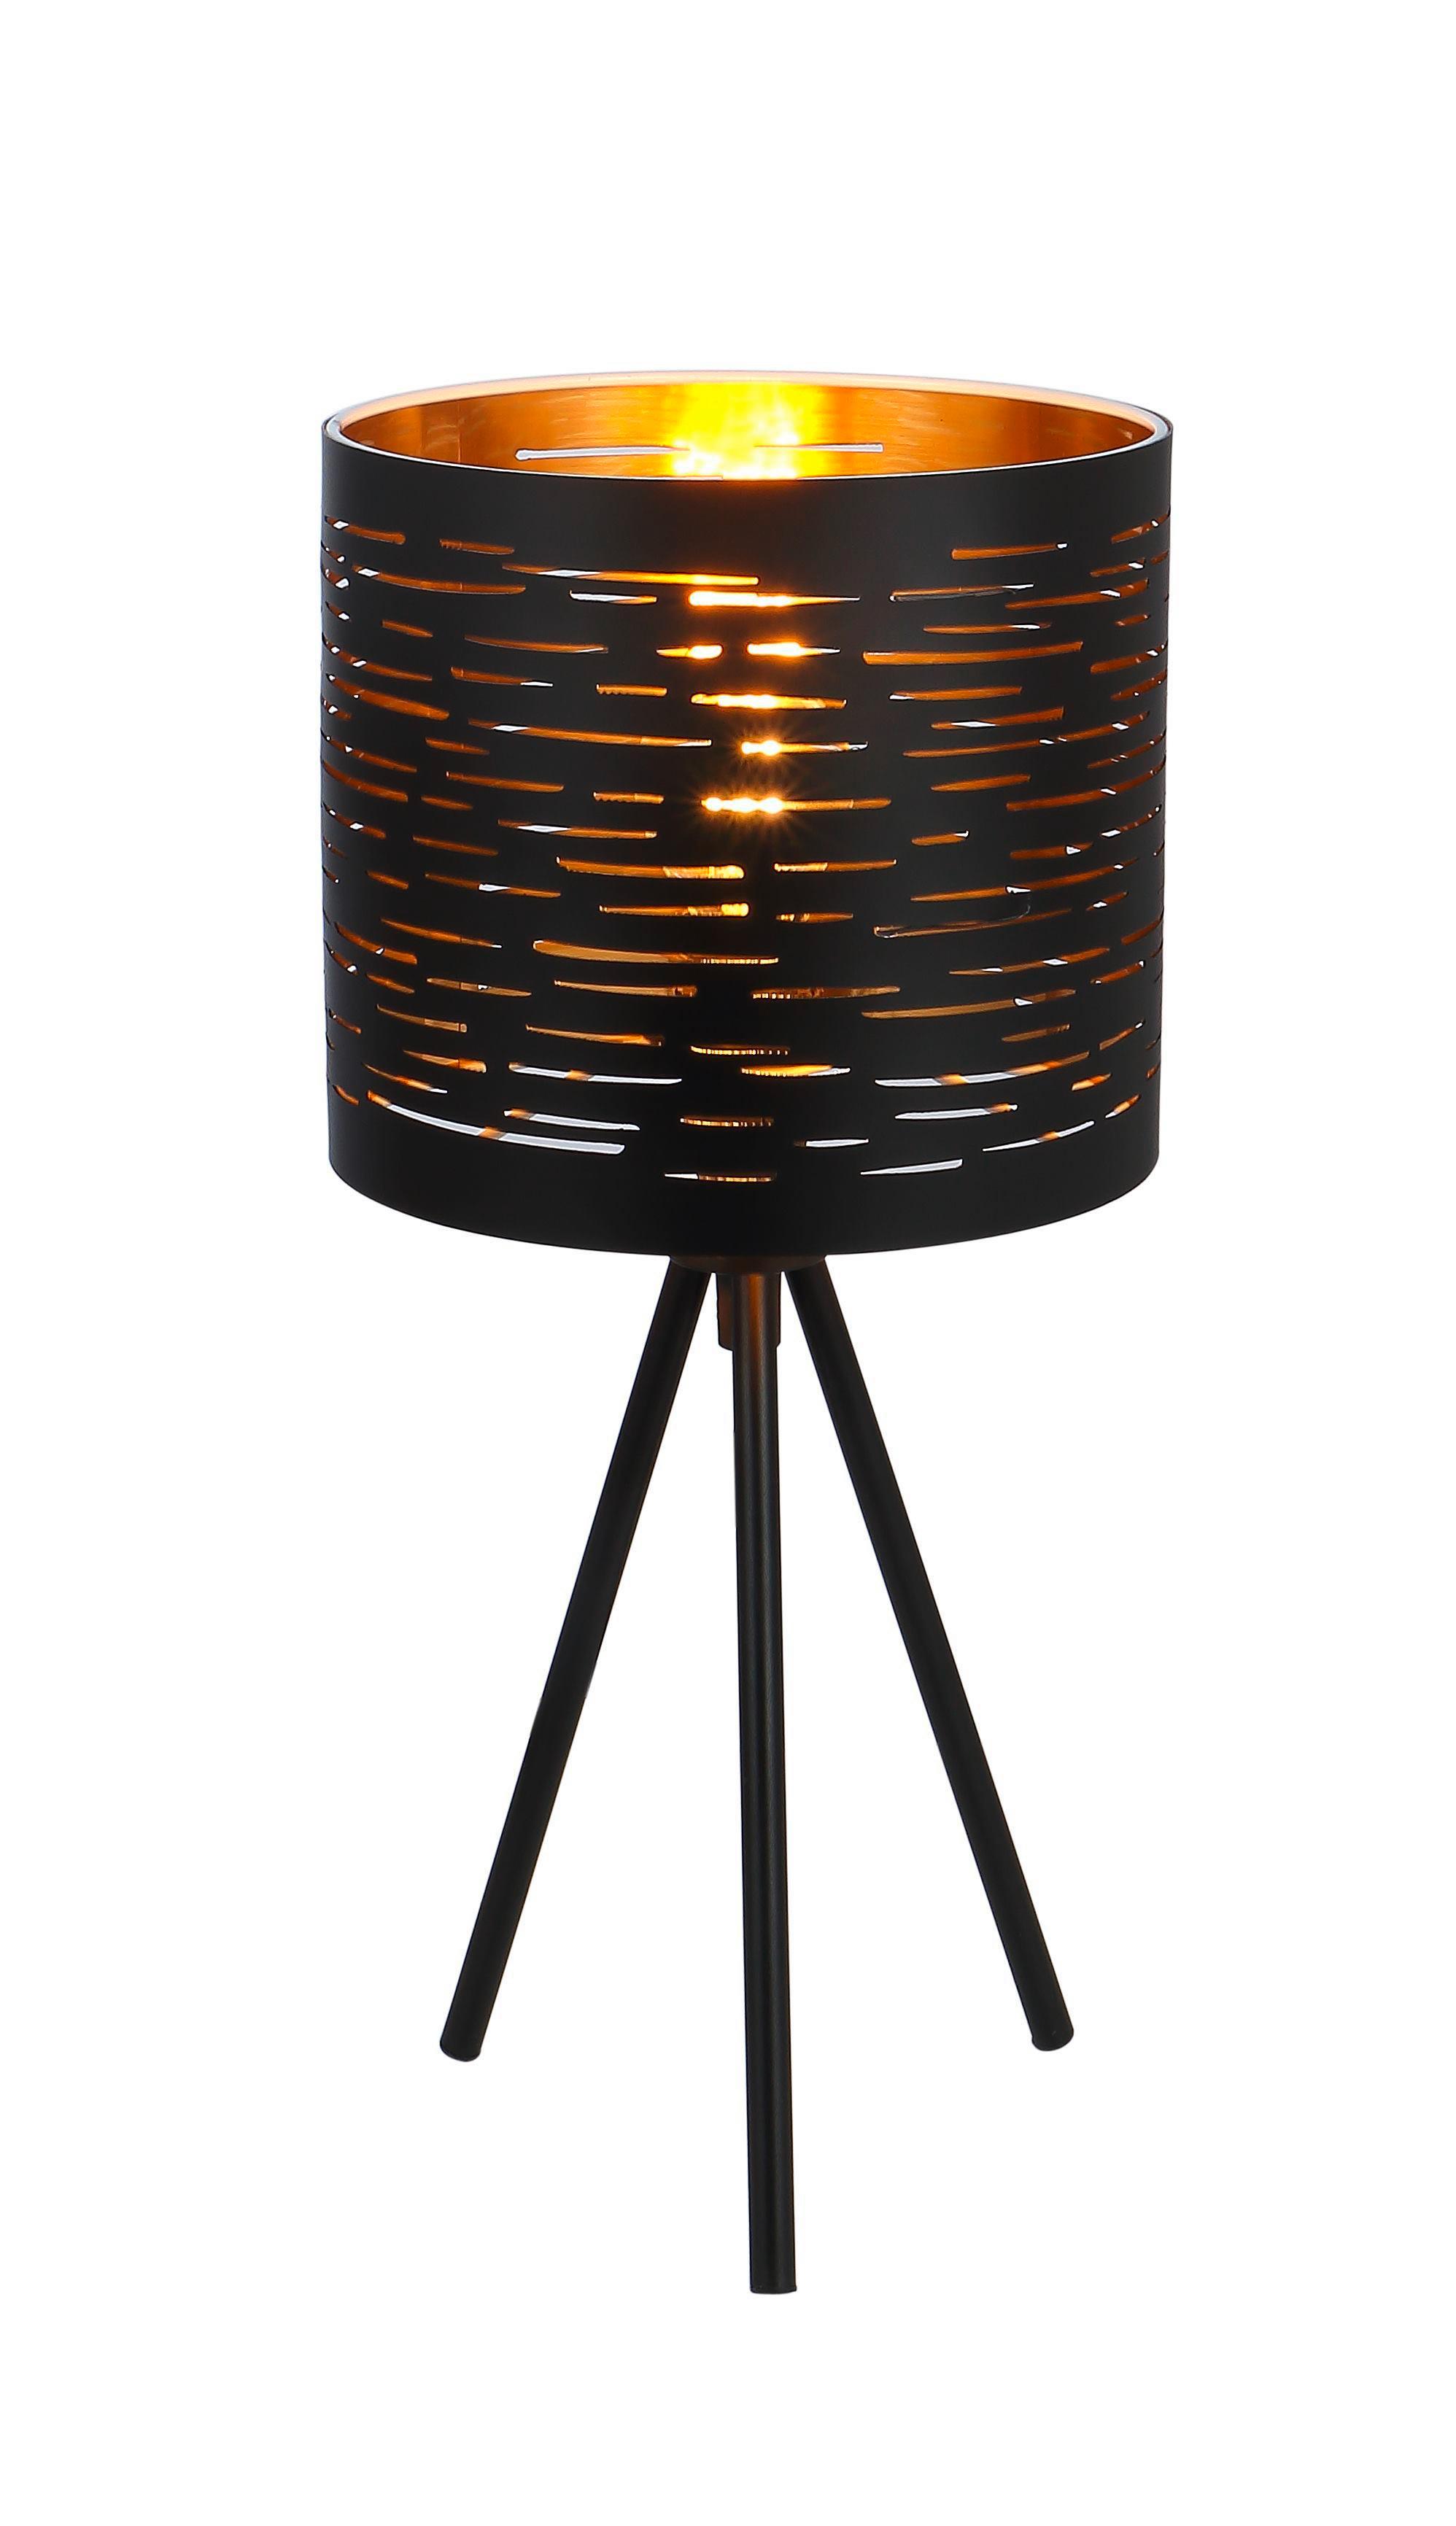 Stolní Lampa Tunno - černá/barvy zlata, Basics, kov/plast (17/35cm) - Globo